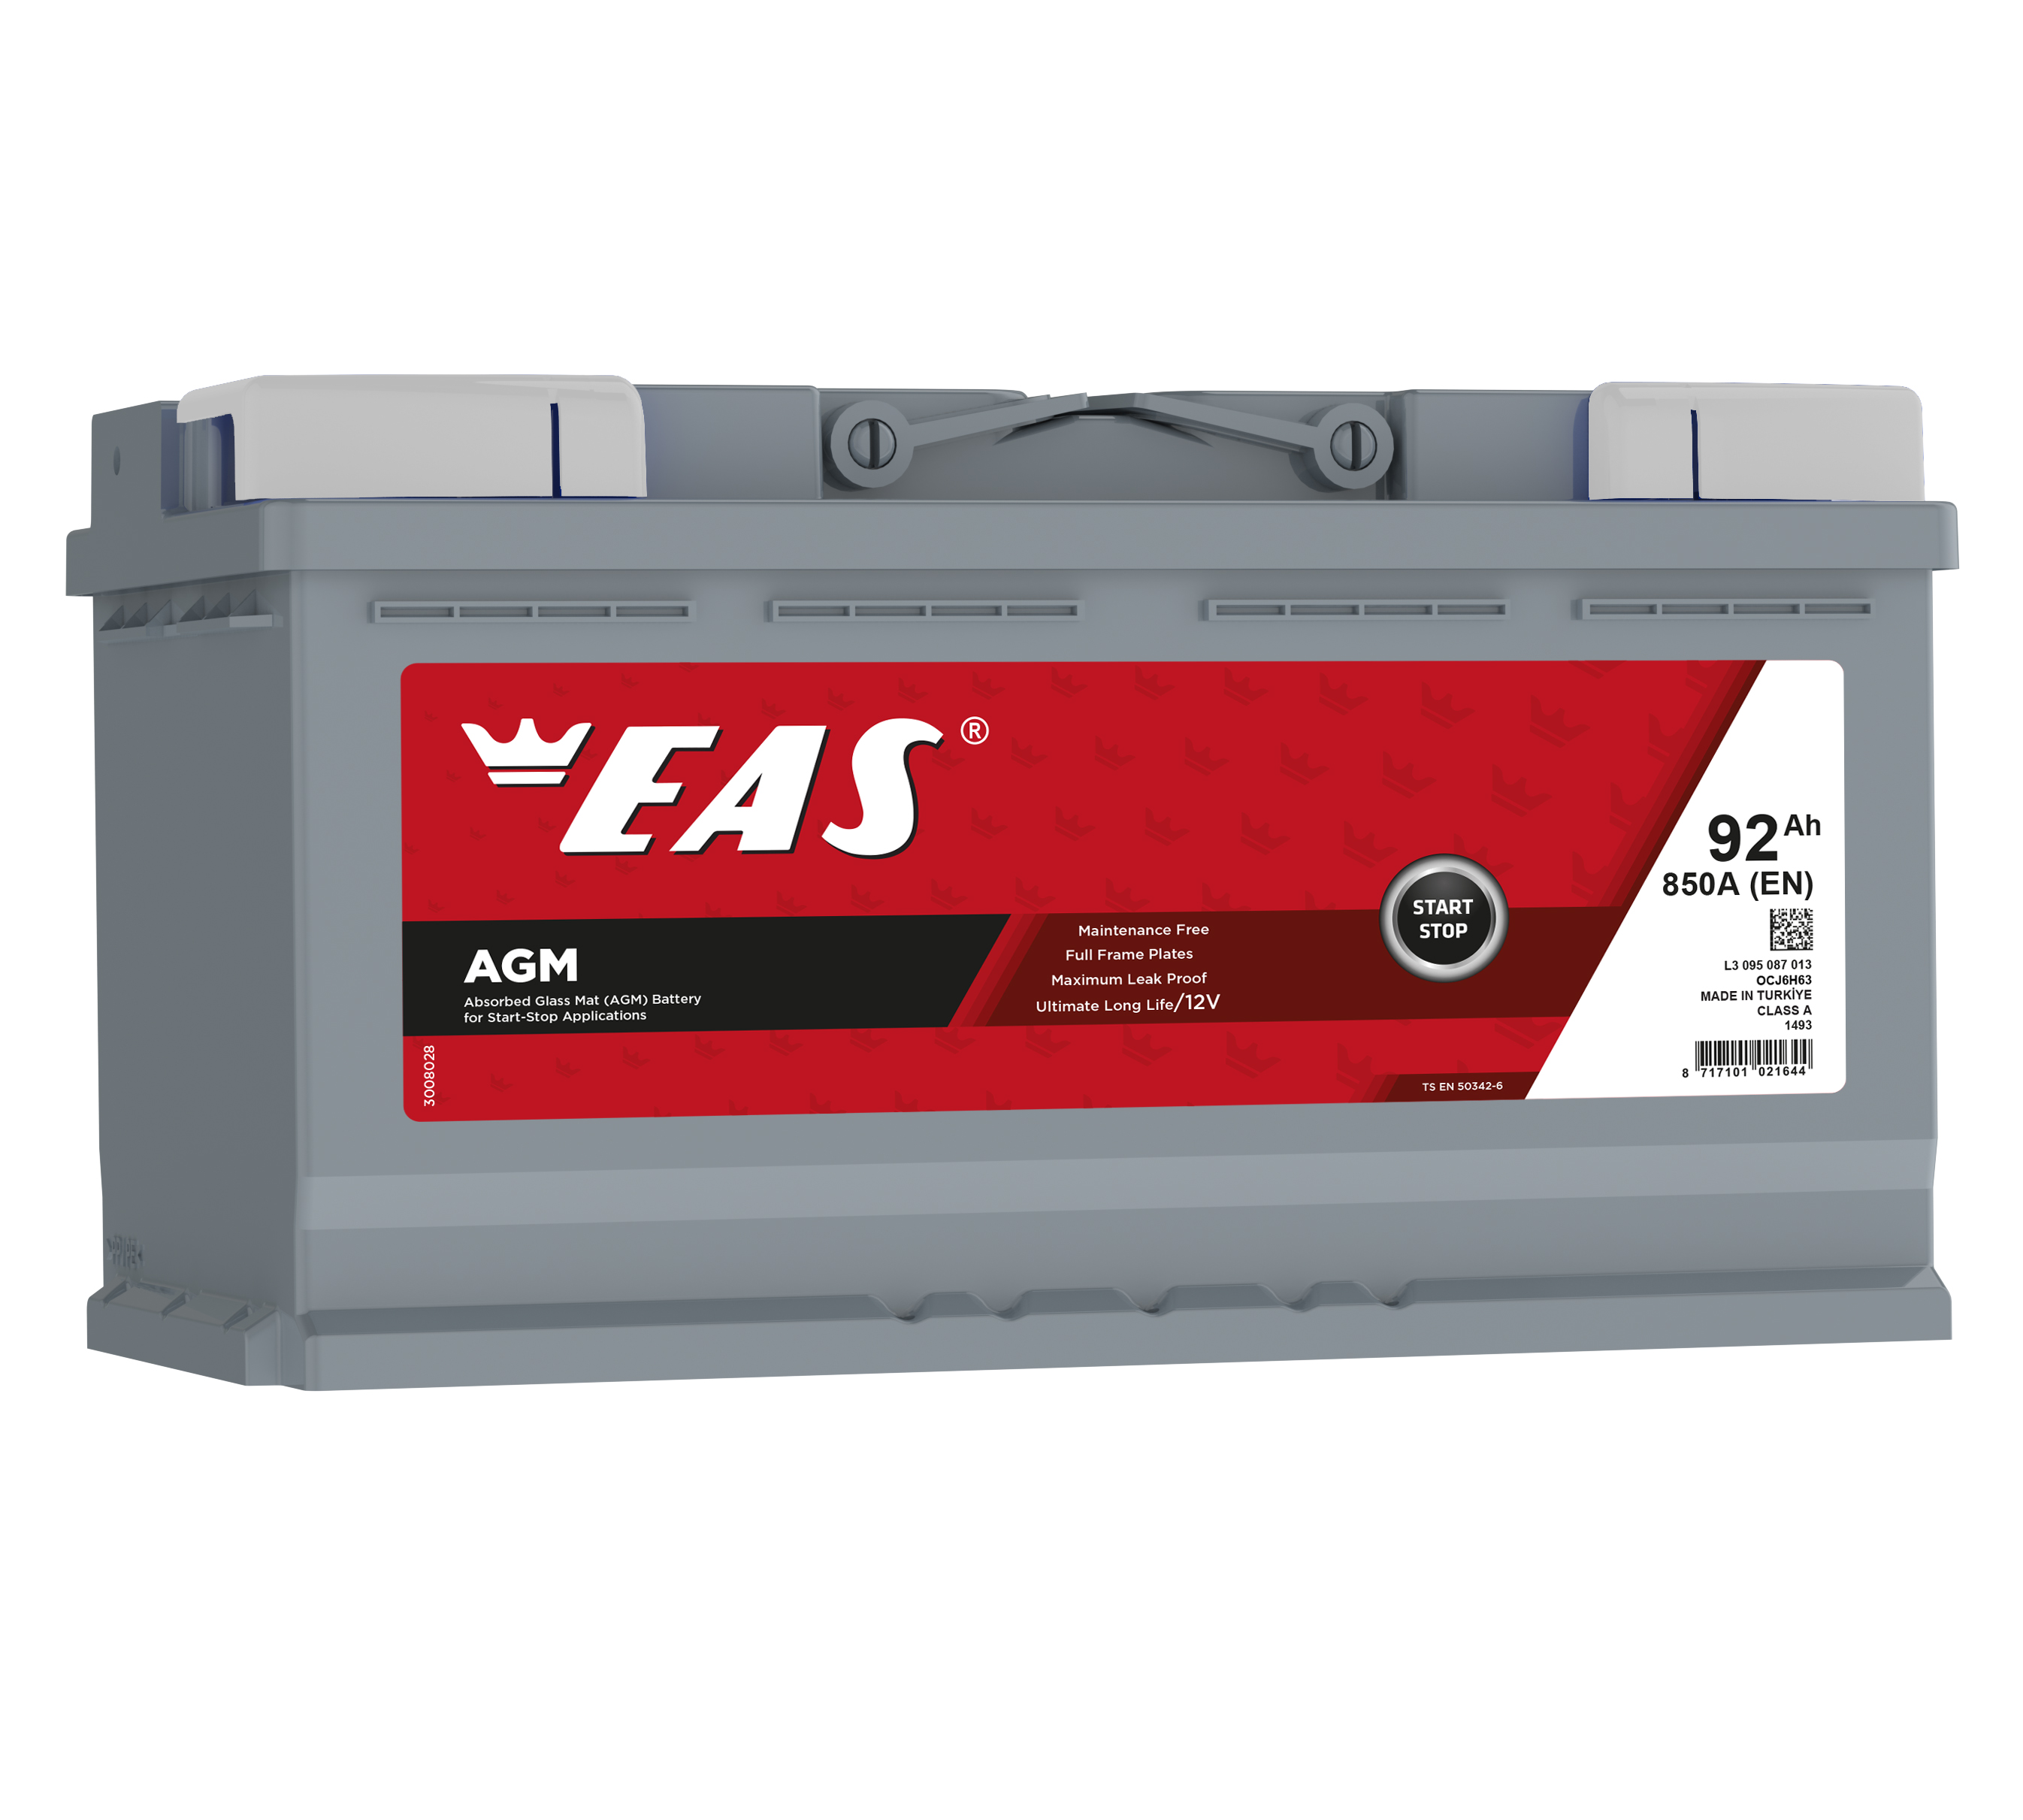 EAS AGM 92(L5) 